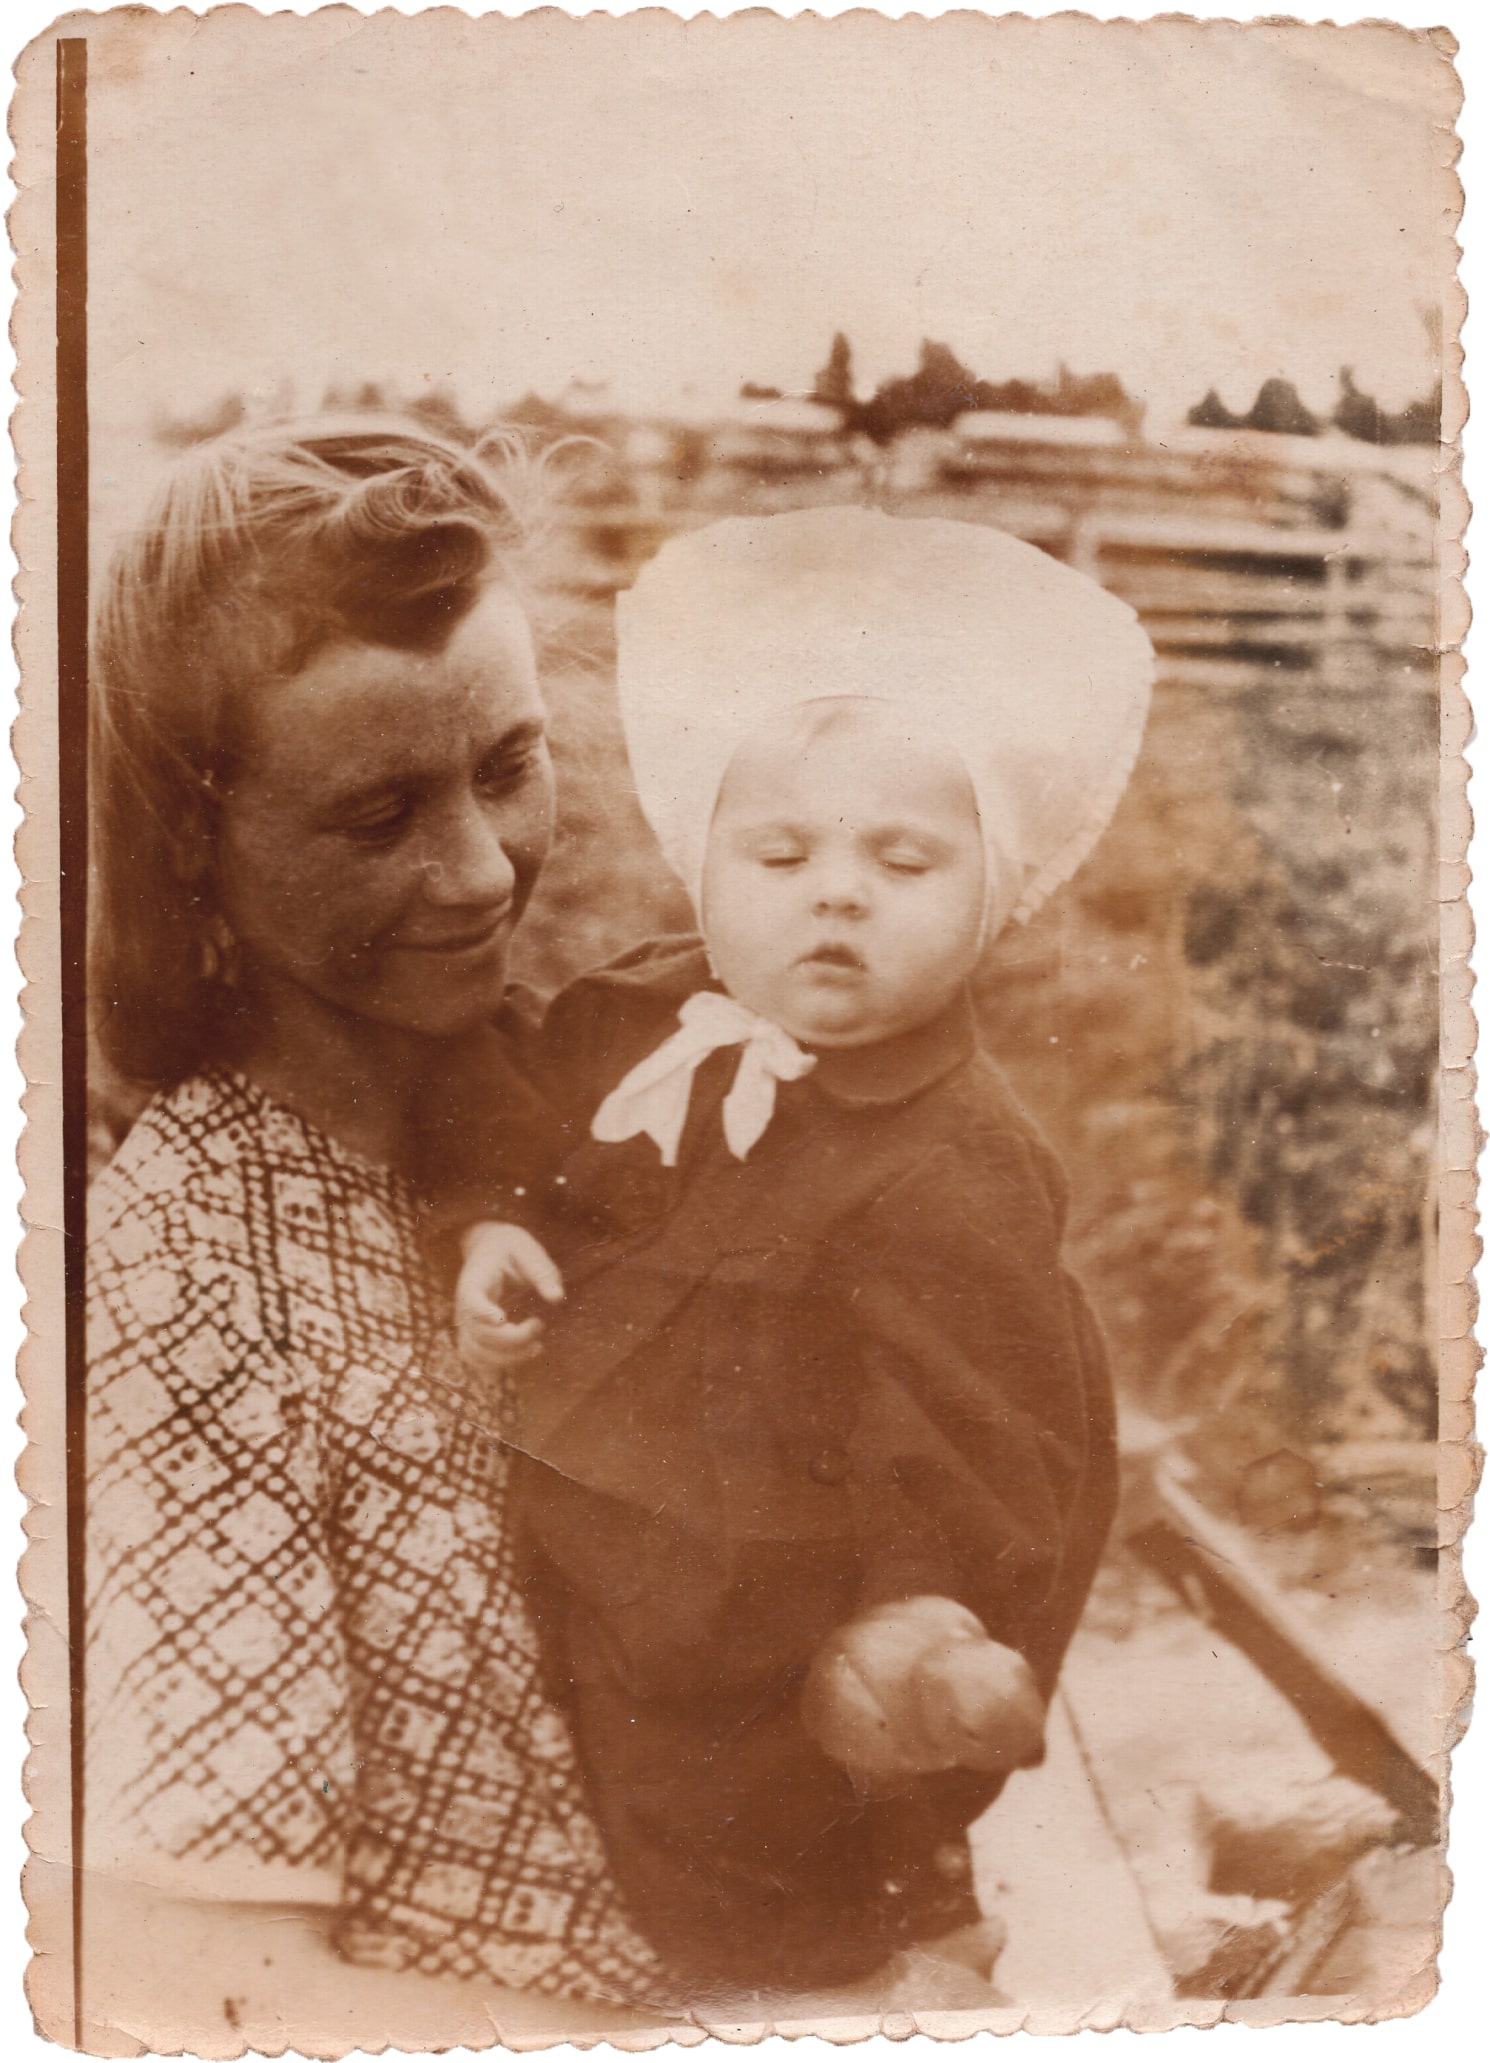 Берута Картанайте з донькою Вірою, село Карєліно у Томській області, 1954 рік. Джерело: Приватний архів Віри Кіпран (Москви)